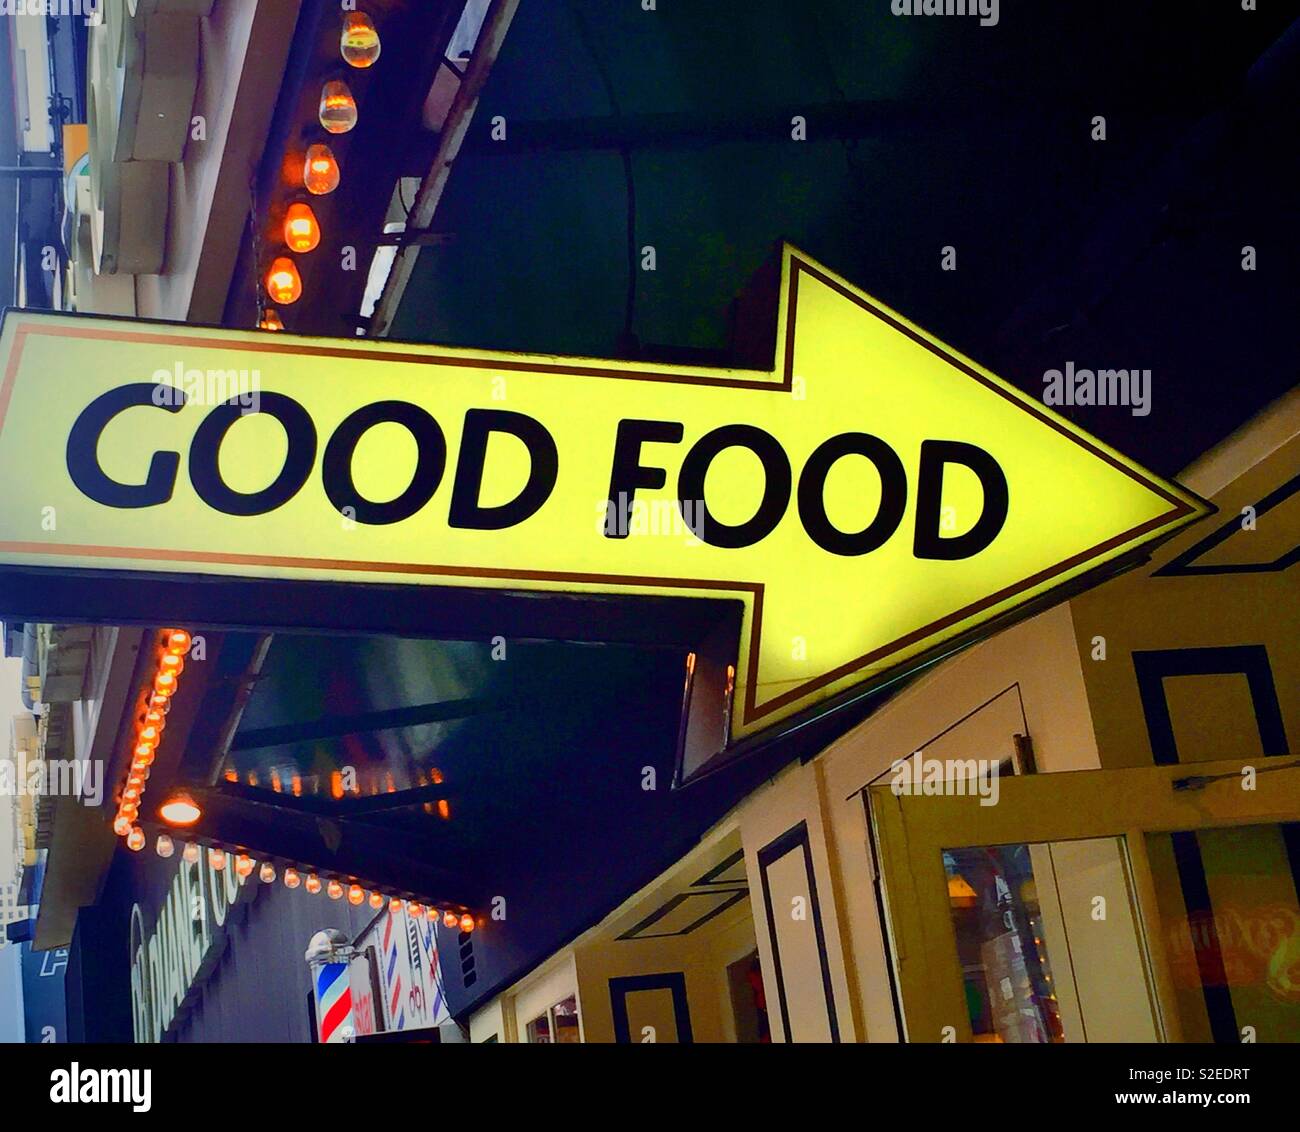 Signe en forme de flèche pointant vers un restaurant qui propose de la bonne nourriture, de Times Square, New York, USA Banque D'Images